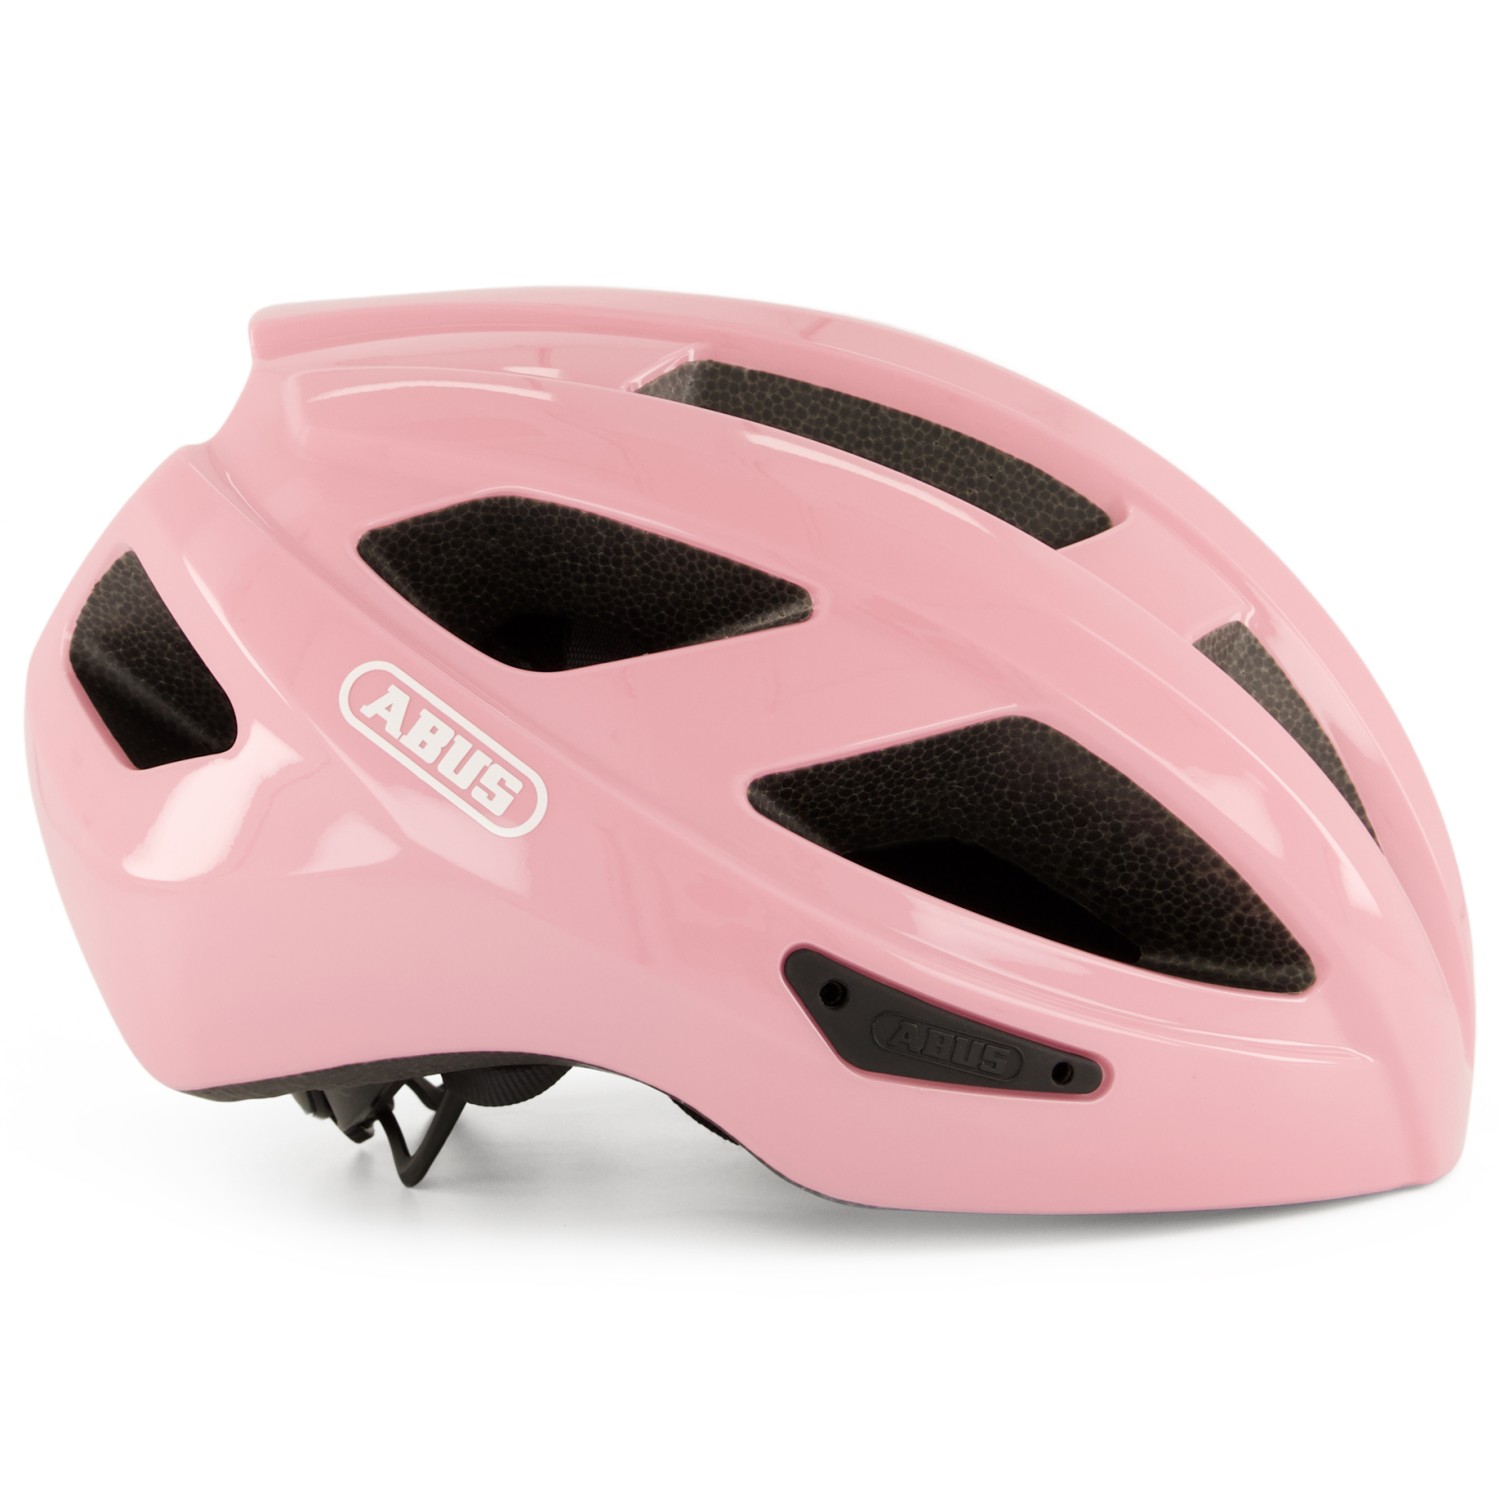 Велосипедный шлем Abus Macator, цвет Shiny Rose